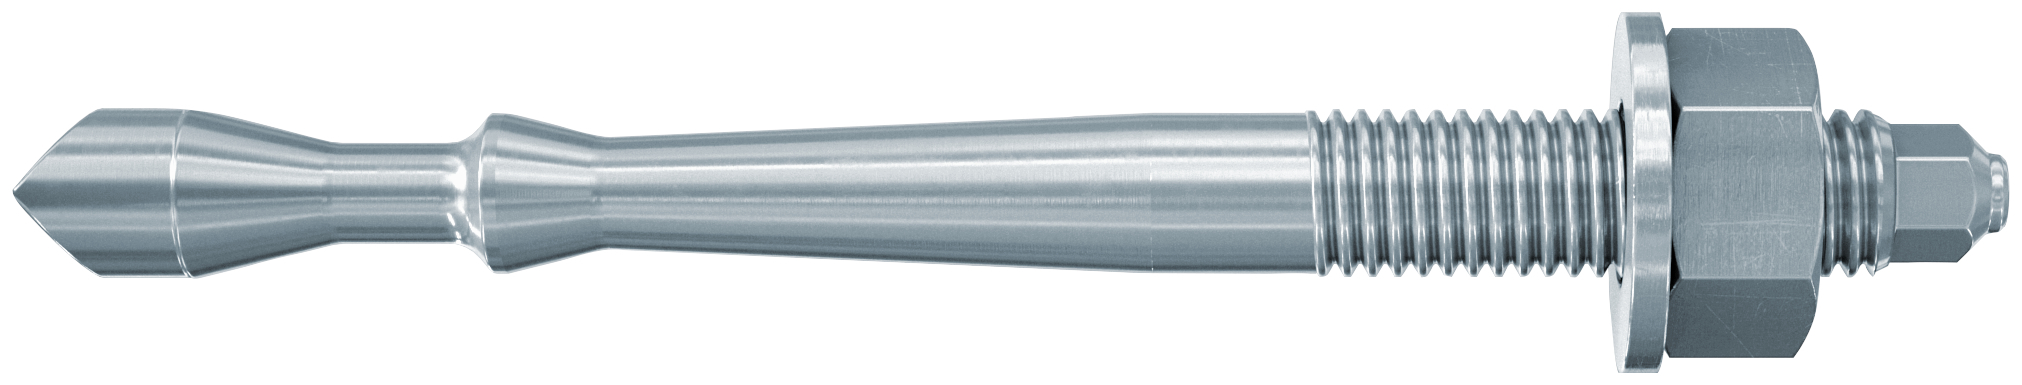 fischer Barra multicono in acciaio FHB II-A S M10x60/10 per ancorante chimico FIS HB (1 Pz.) Barra multicono corta in acciaio zincato classe 8.8.Massime prestazioni a trazione in calcestruzzo fessurato e a ridotte distanze dai bordi..